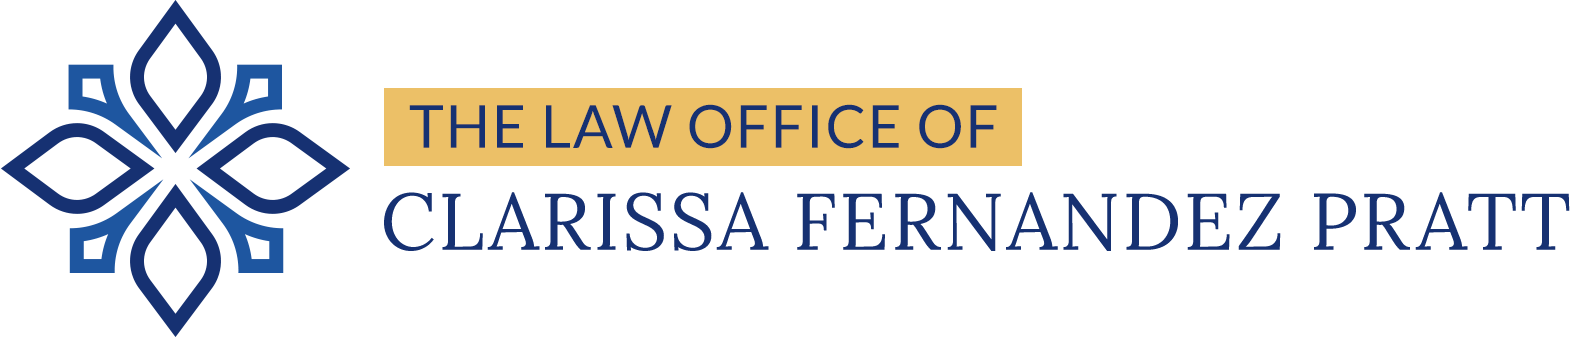 The Law Office Of Clarissa Fernandez Pratt